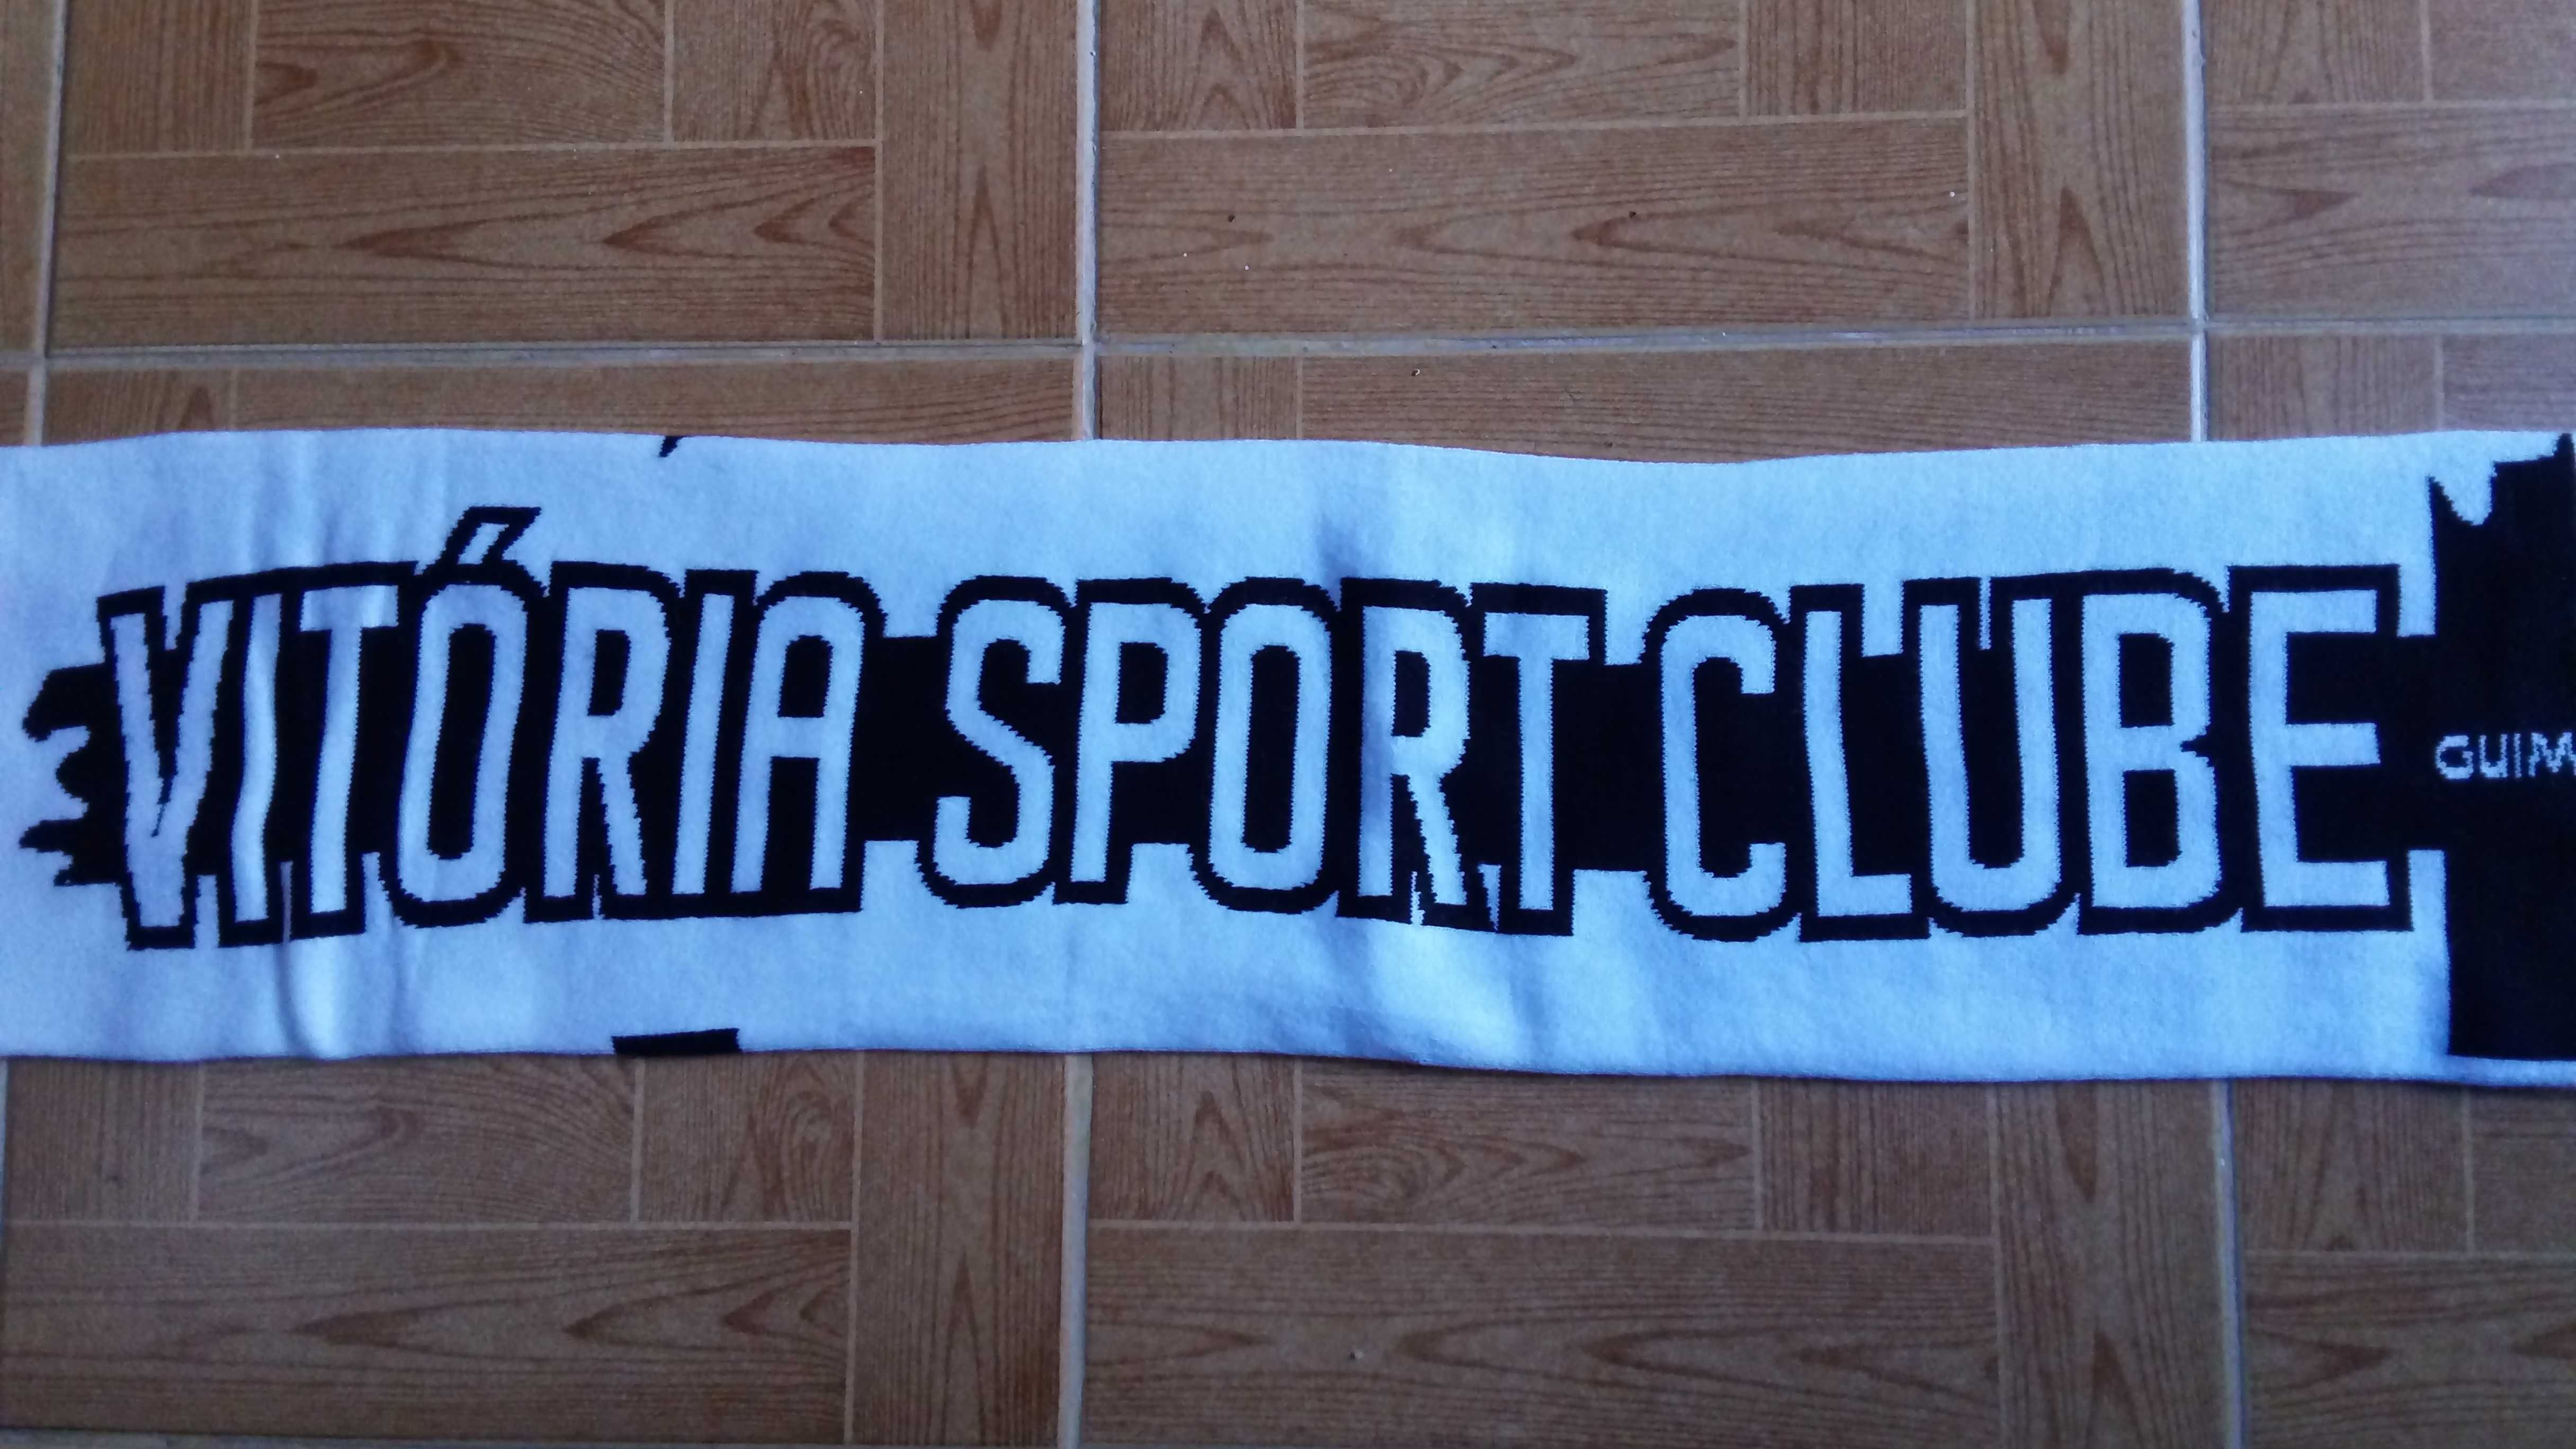 Cachecol duplo do Vitória Sport Club - Guimarães